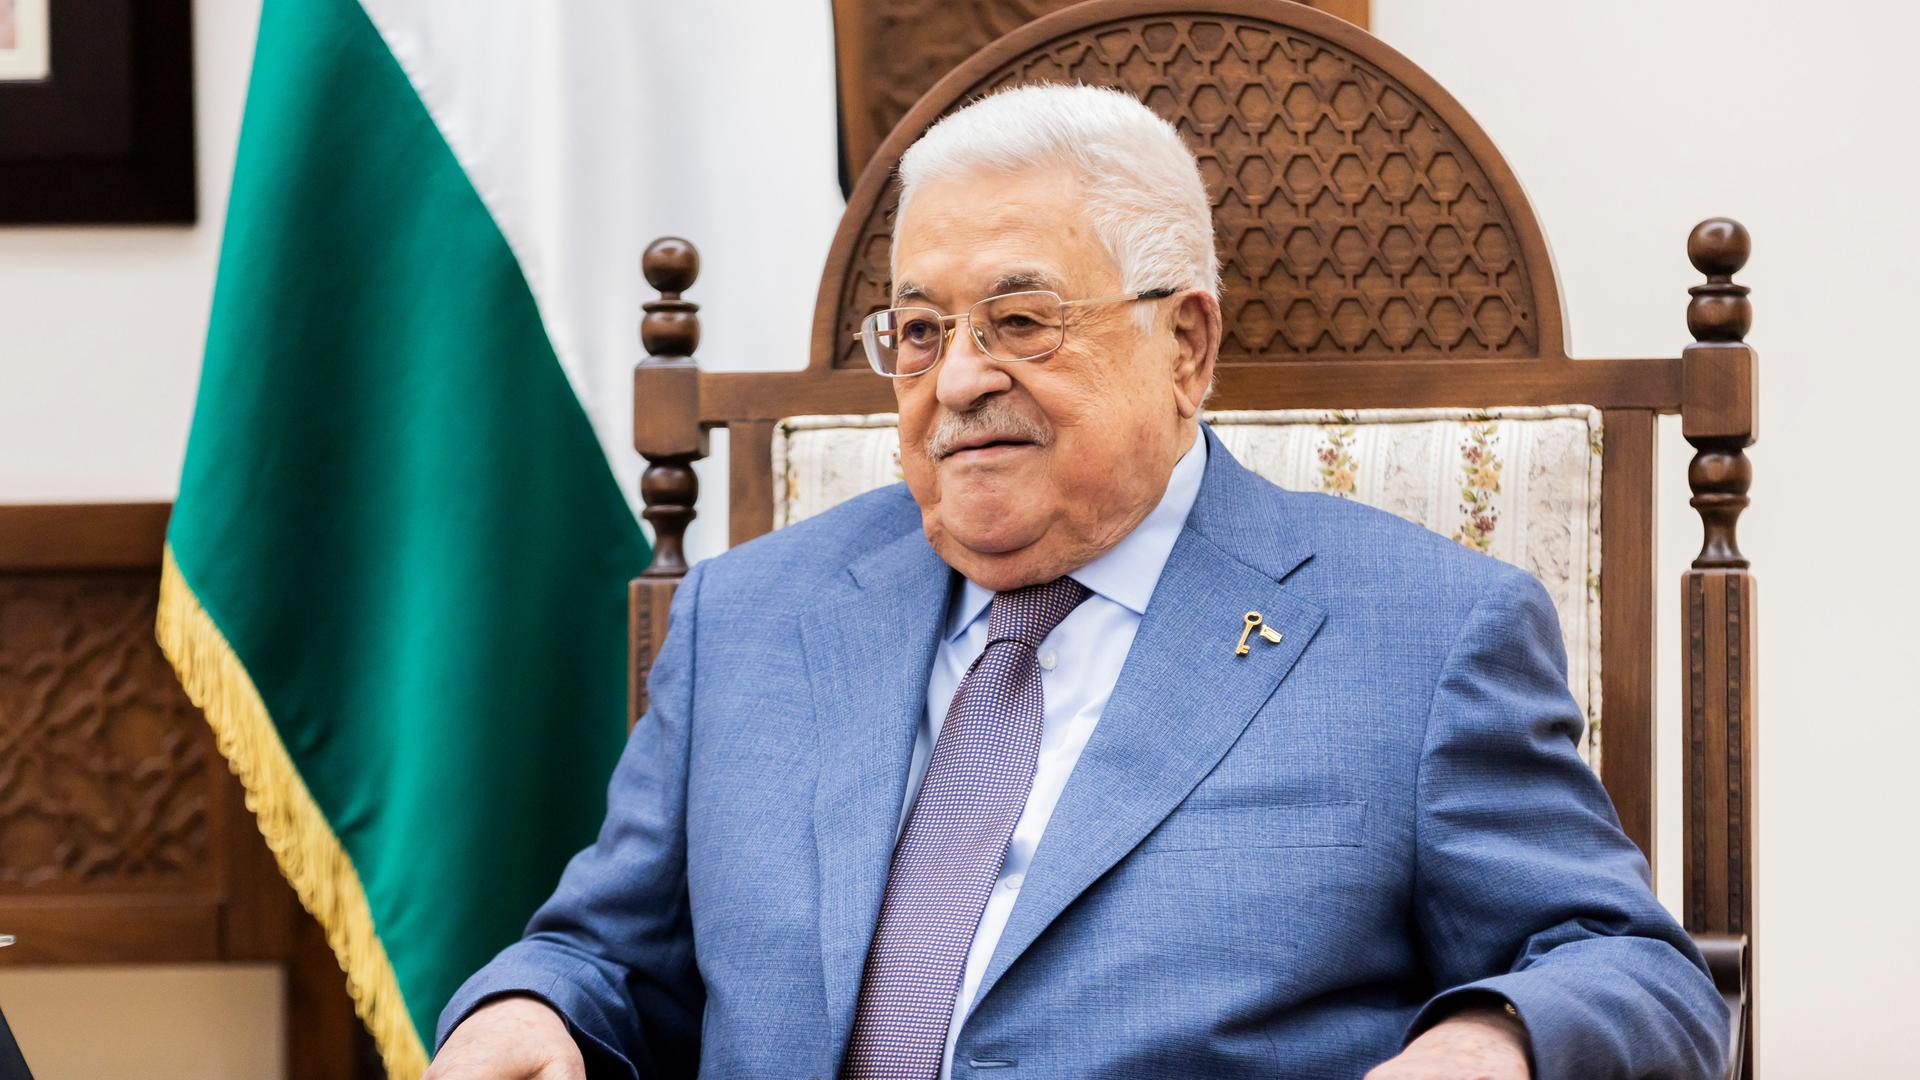 Abbas im blauen Jackett sitzt in einem Stuhl und blickt ernst. naben ihm eine palästineneische Fahne.